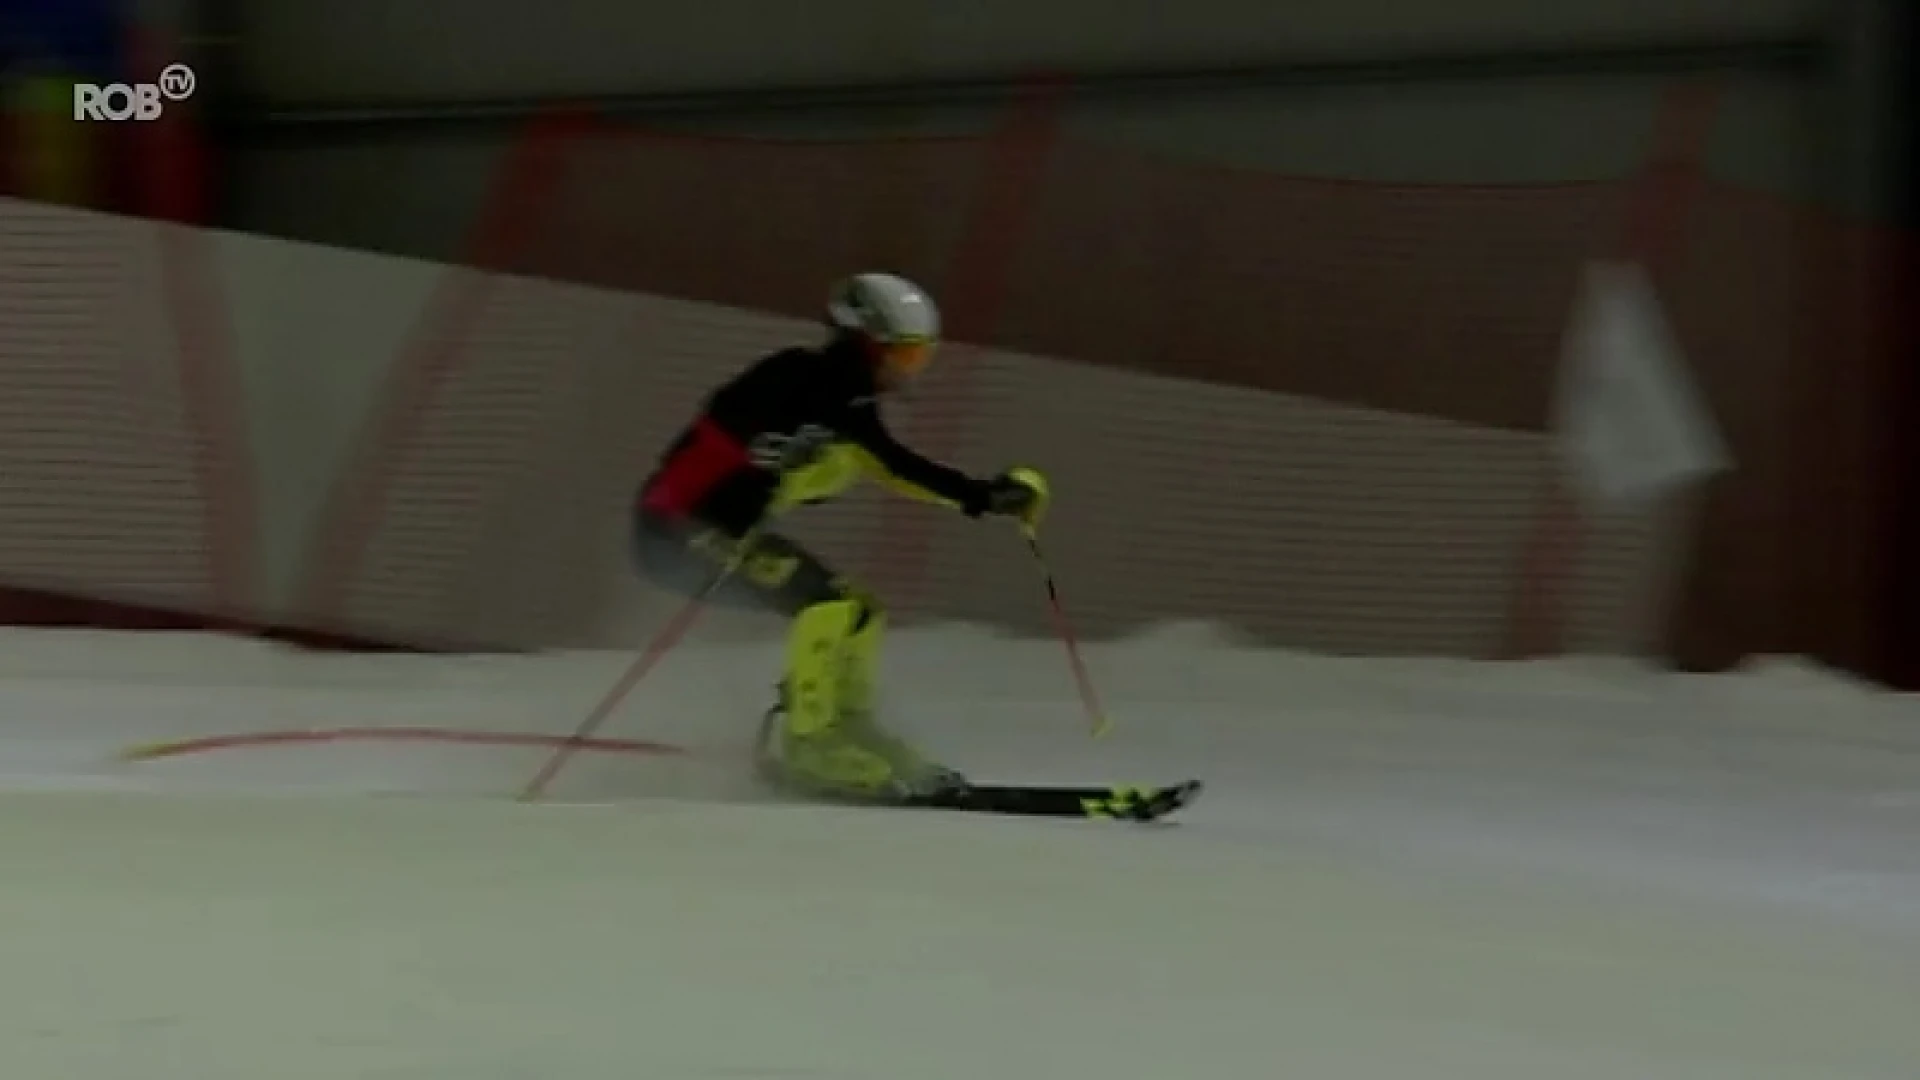 Leuvens ski-talent Dries Van Ceulebroeck droomt van de Olympische spelen